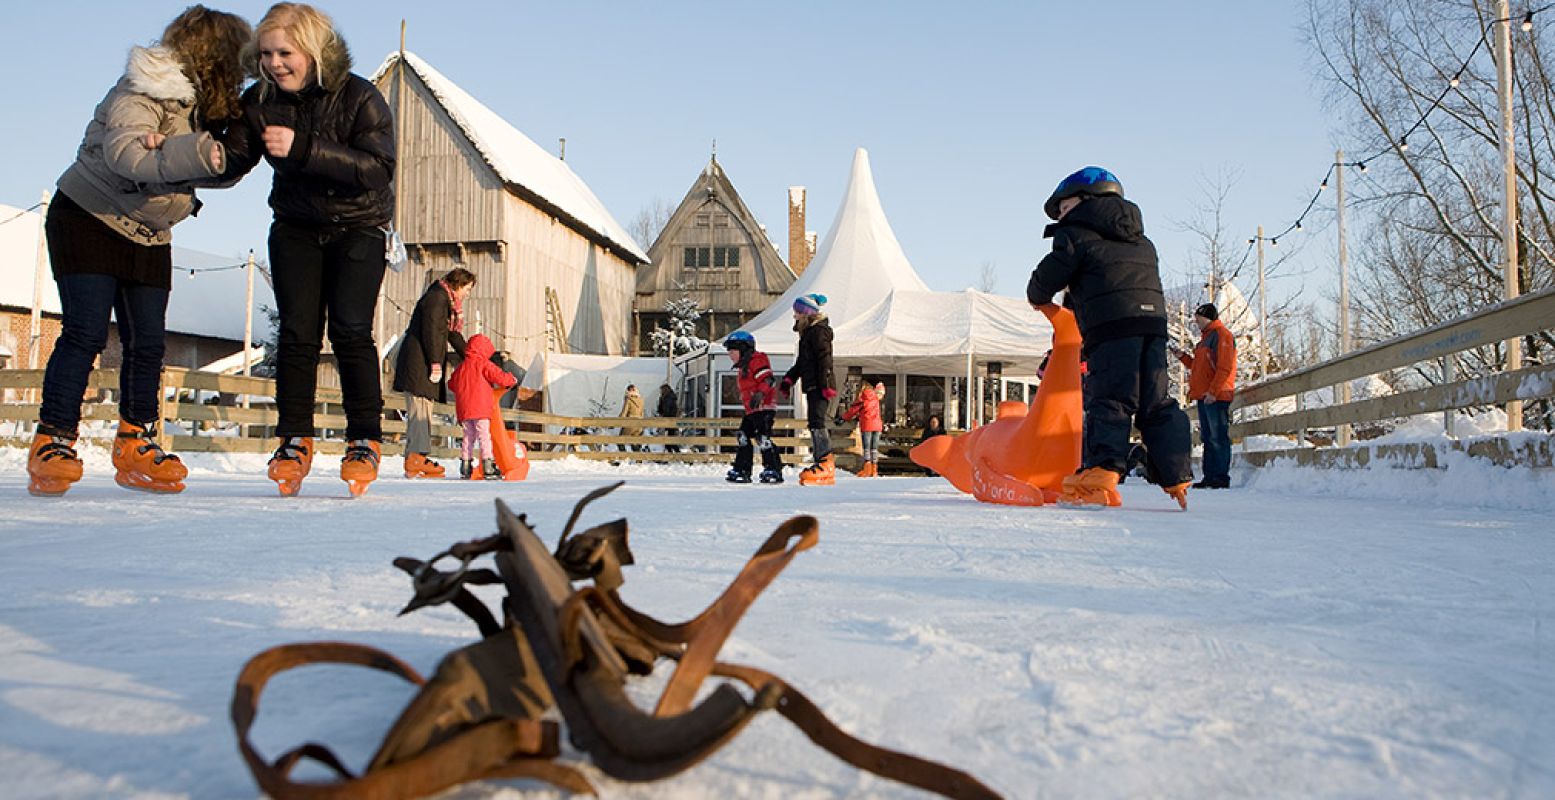 Lekker schaatsen op de ijsbaan van Archeon. Foto: Archeon.